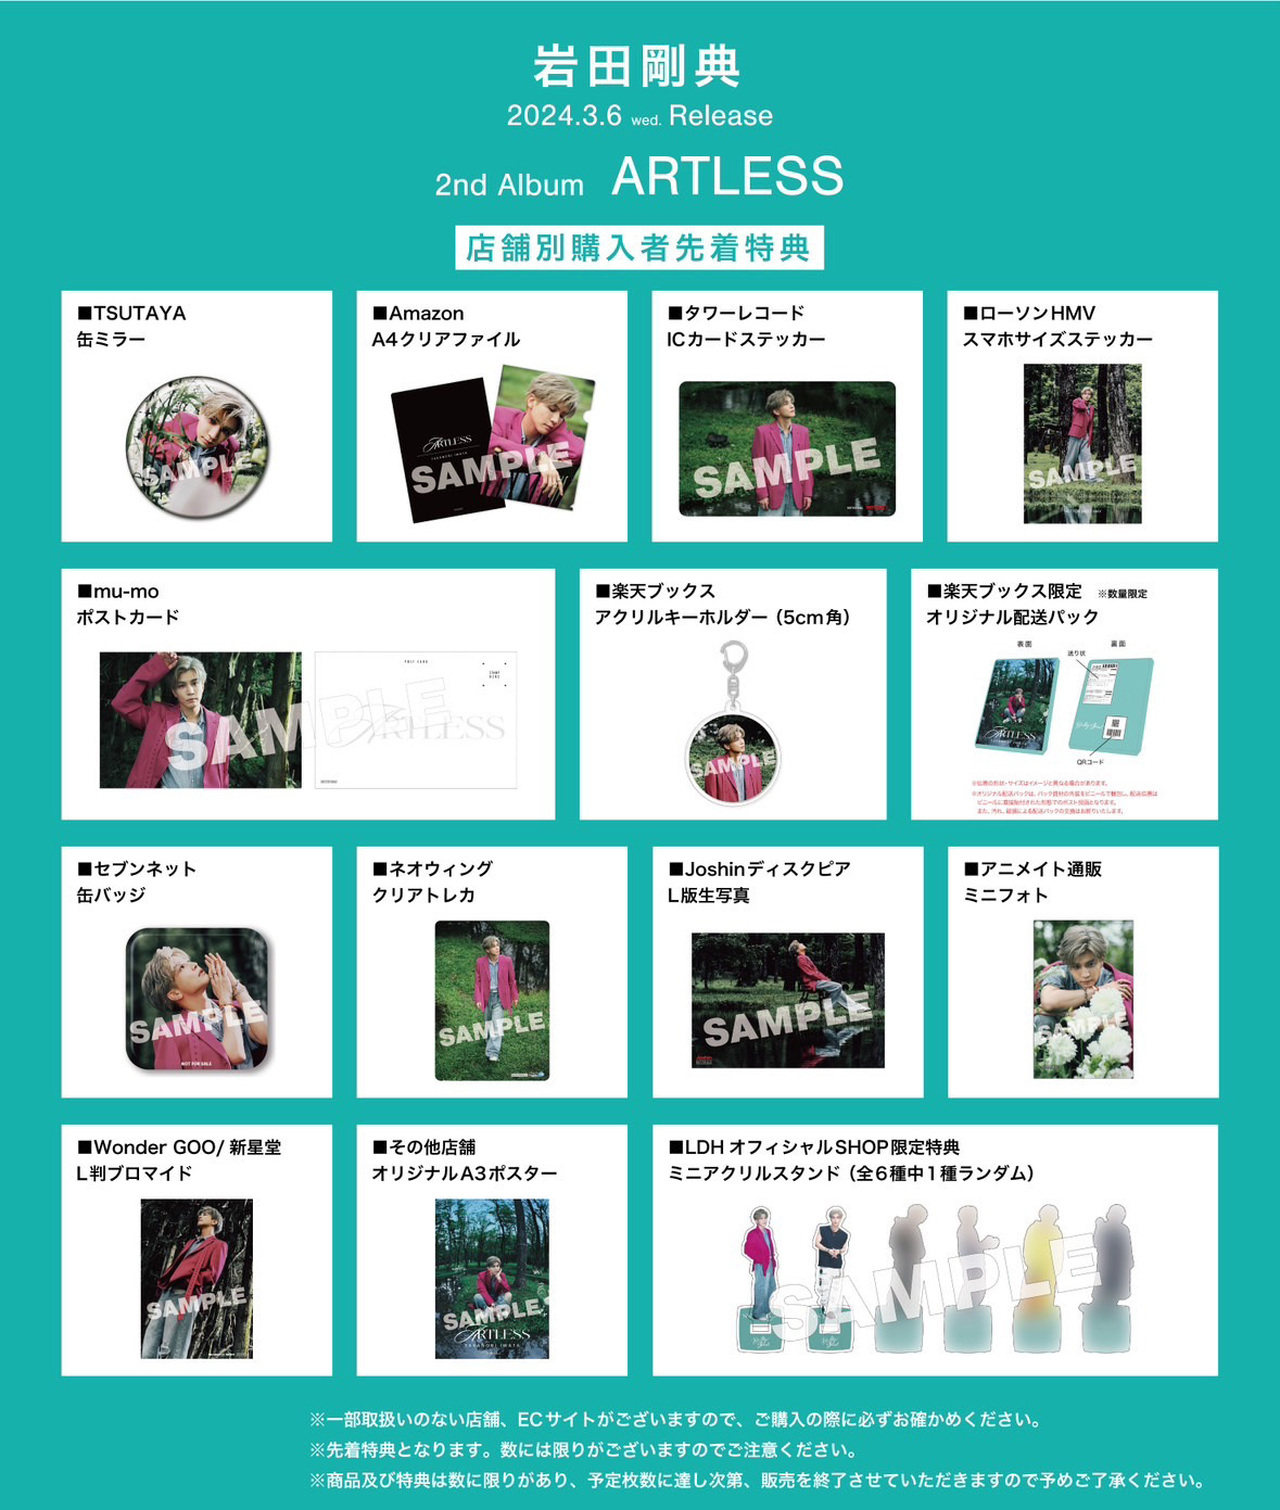 岩田剛典 2nd Album『ARTLESS』全国CD SHOP・EC SHOP購入者先着特典